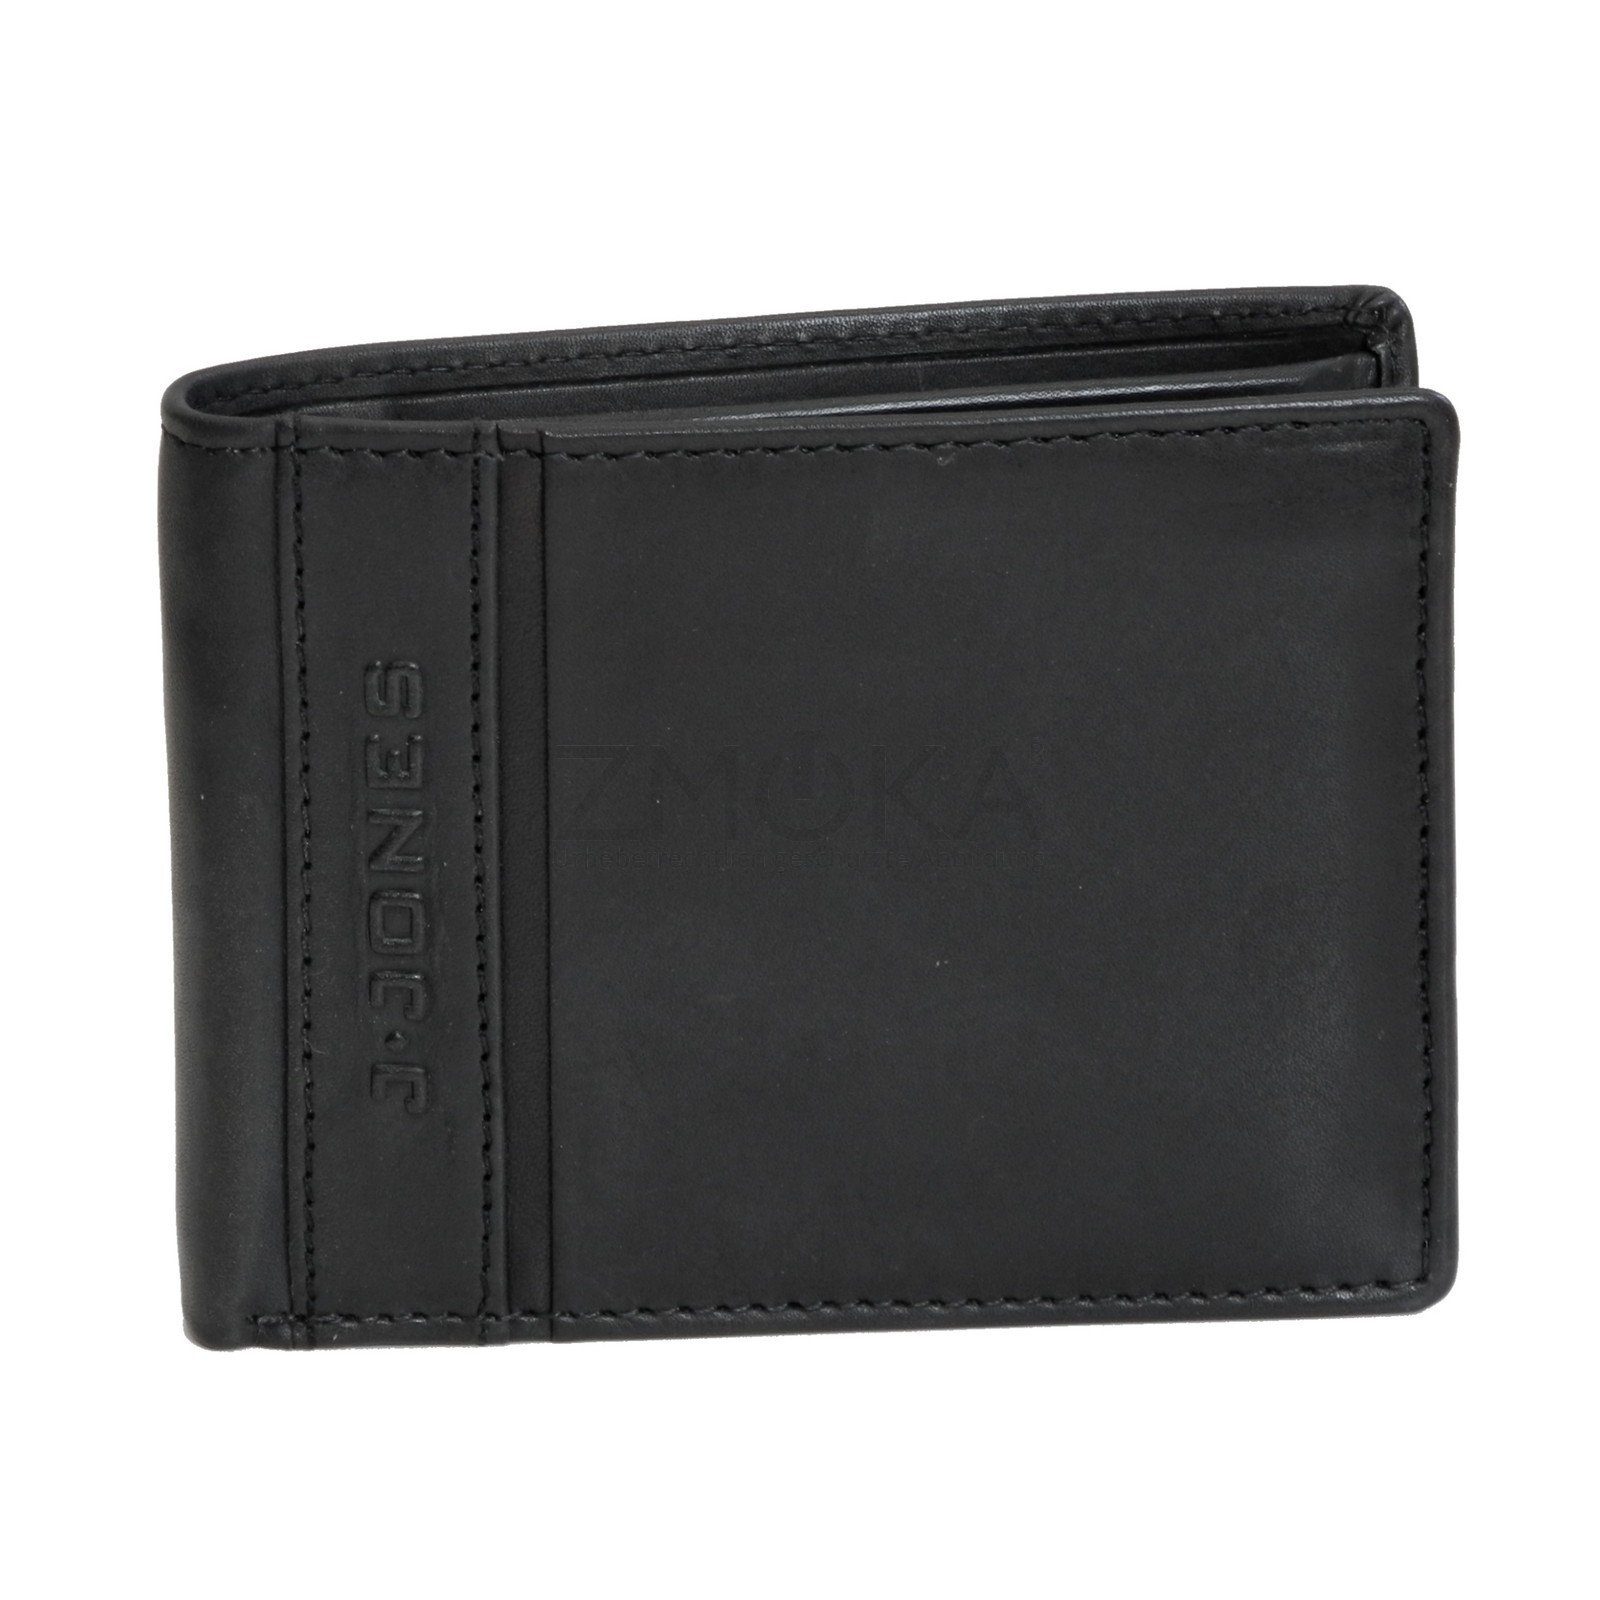 J.Jones Geldbörse J.JONES - RFID safe Leder Herren Geldbörse Portemonnaie  Auswahl, Maße ca. in Zentimeter : 12 x 2.5 x 9.5 (BxHxT), Gewicht ca. 90  Gramm